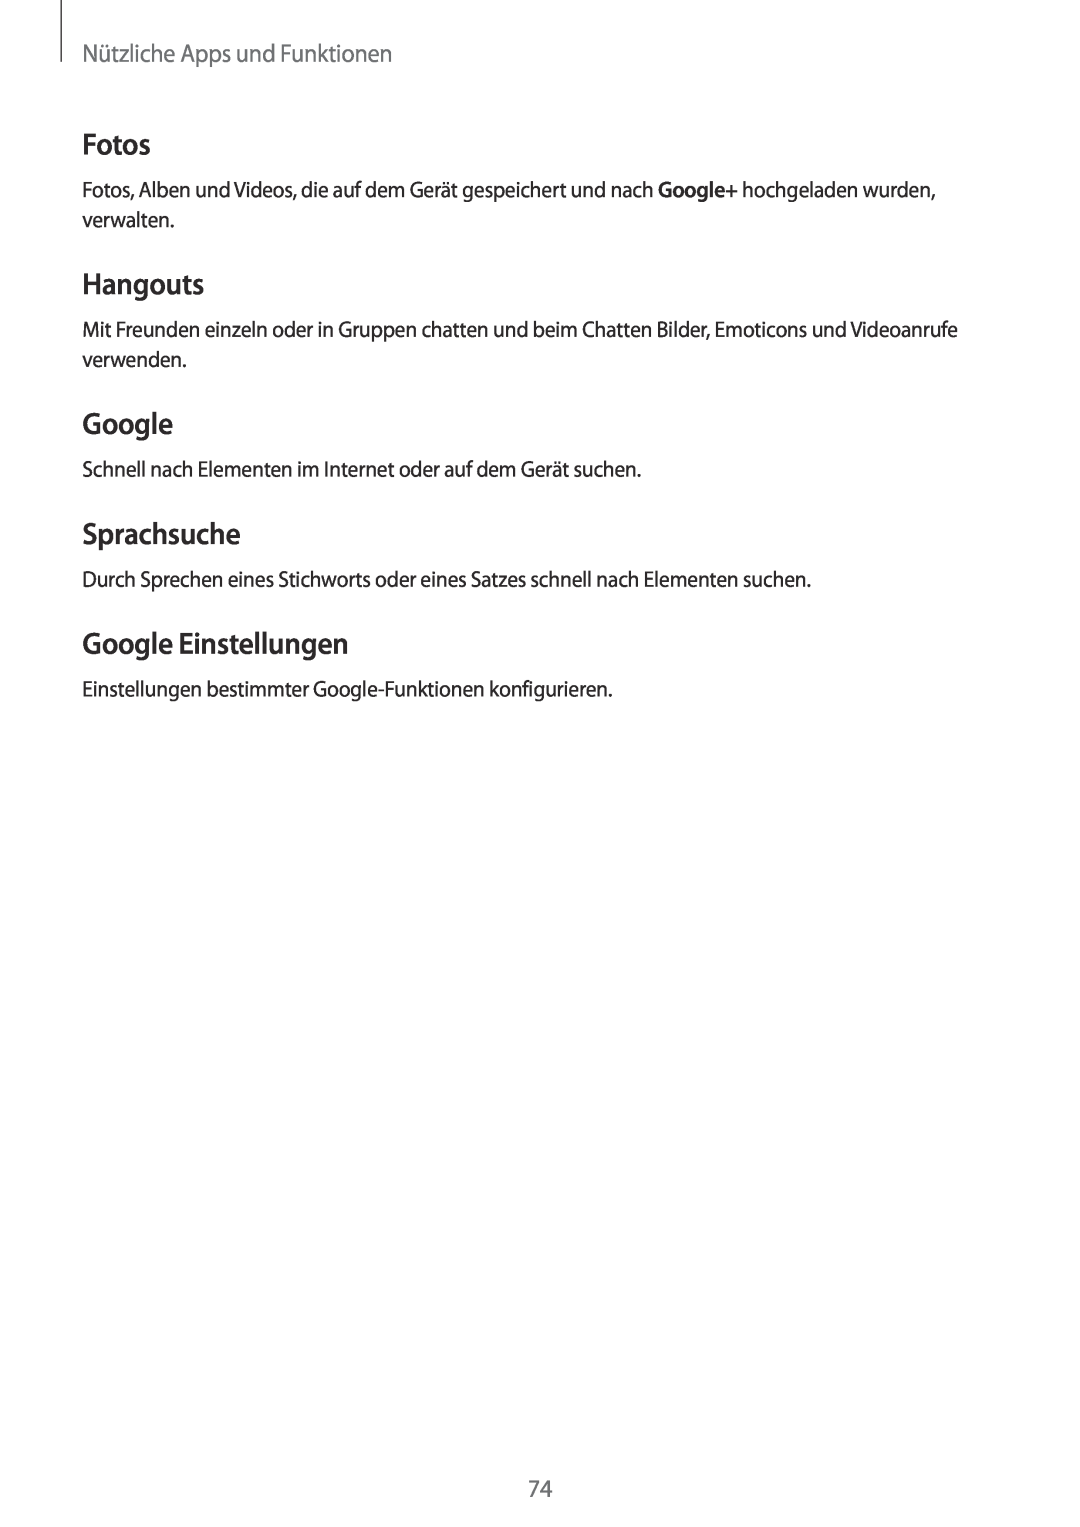 Samsung SM-G110HZWATPH manual Fotos, Hangouts, Sprachsuche, Google Einstellungen, Nützliche Apps und Funktionen 